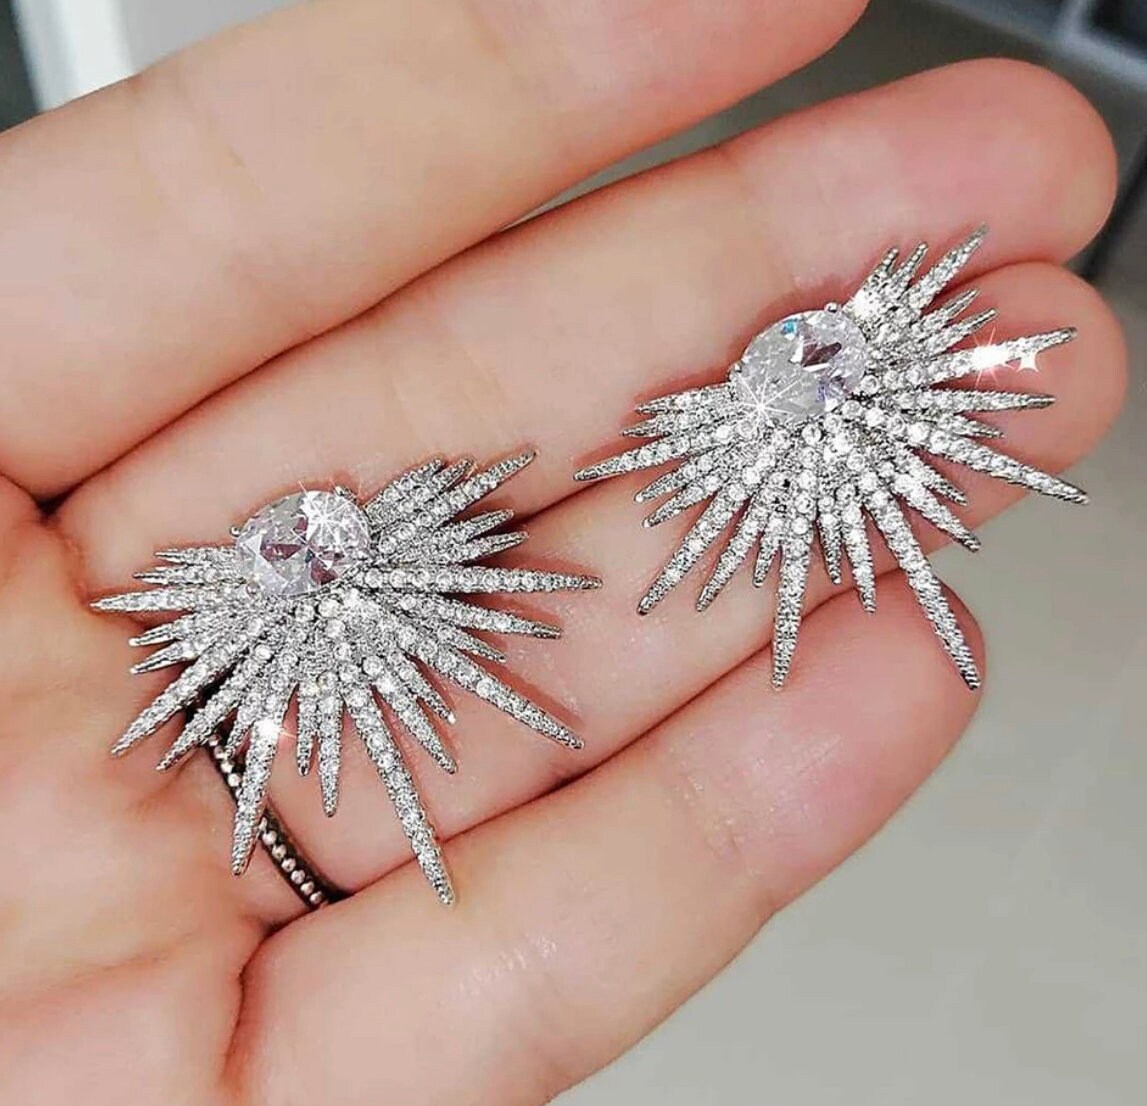 Luxury Fireworks Stud Earrings-Crystal Retro Earrings-Statement Earrings-Star Earrings-Elegant Earrings-Big Shiny Earrings-Wedding Earrings